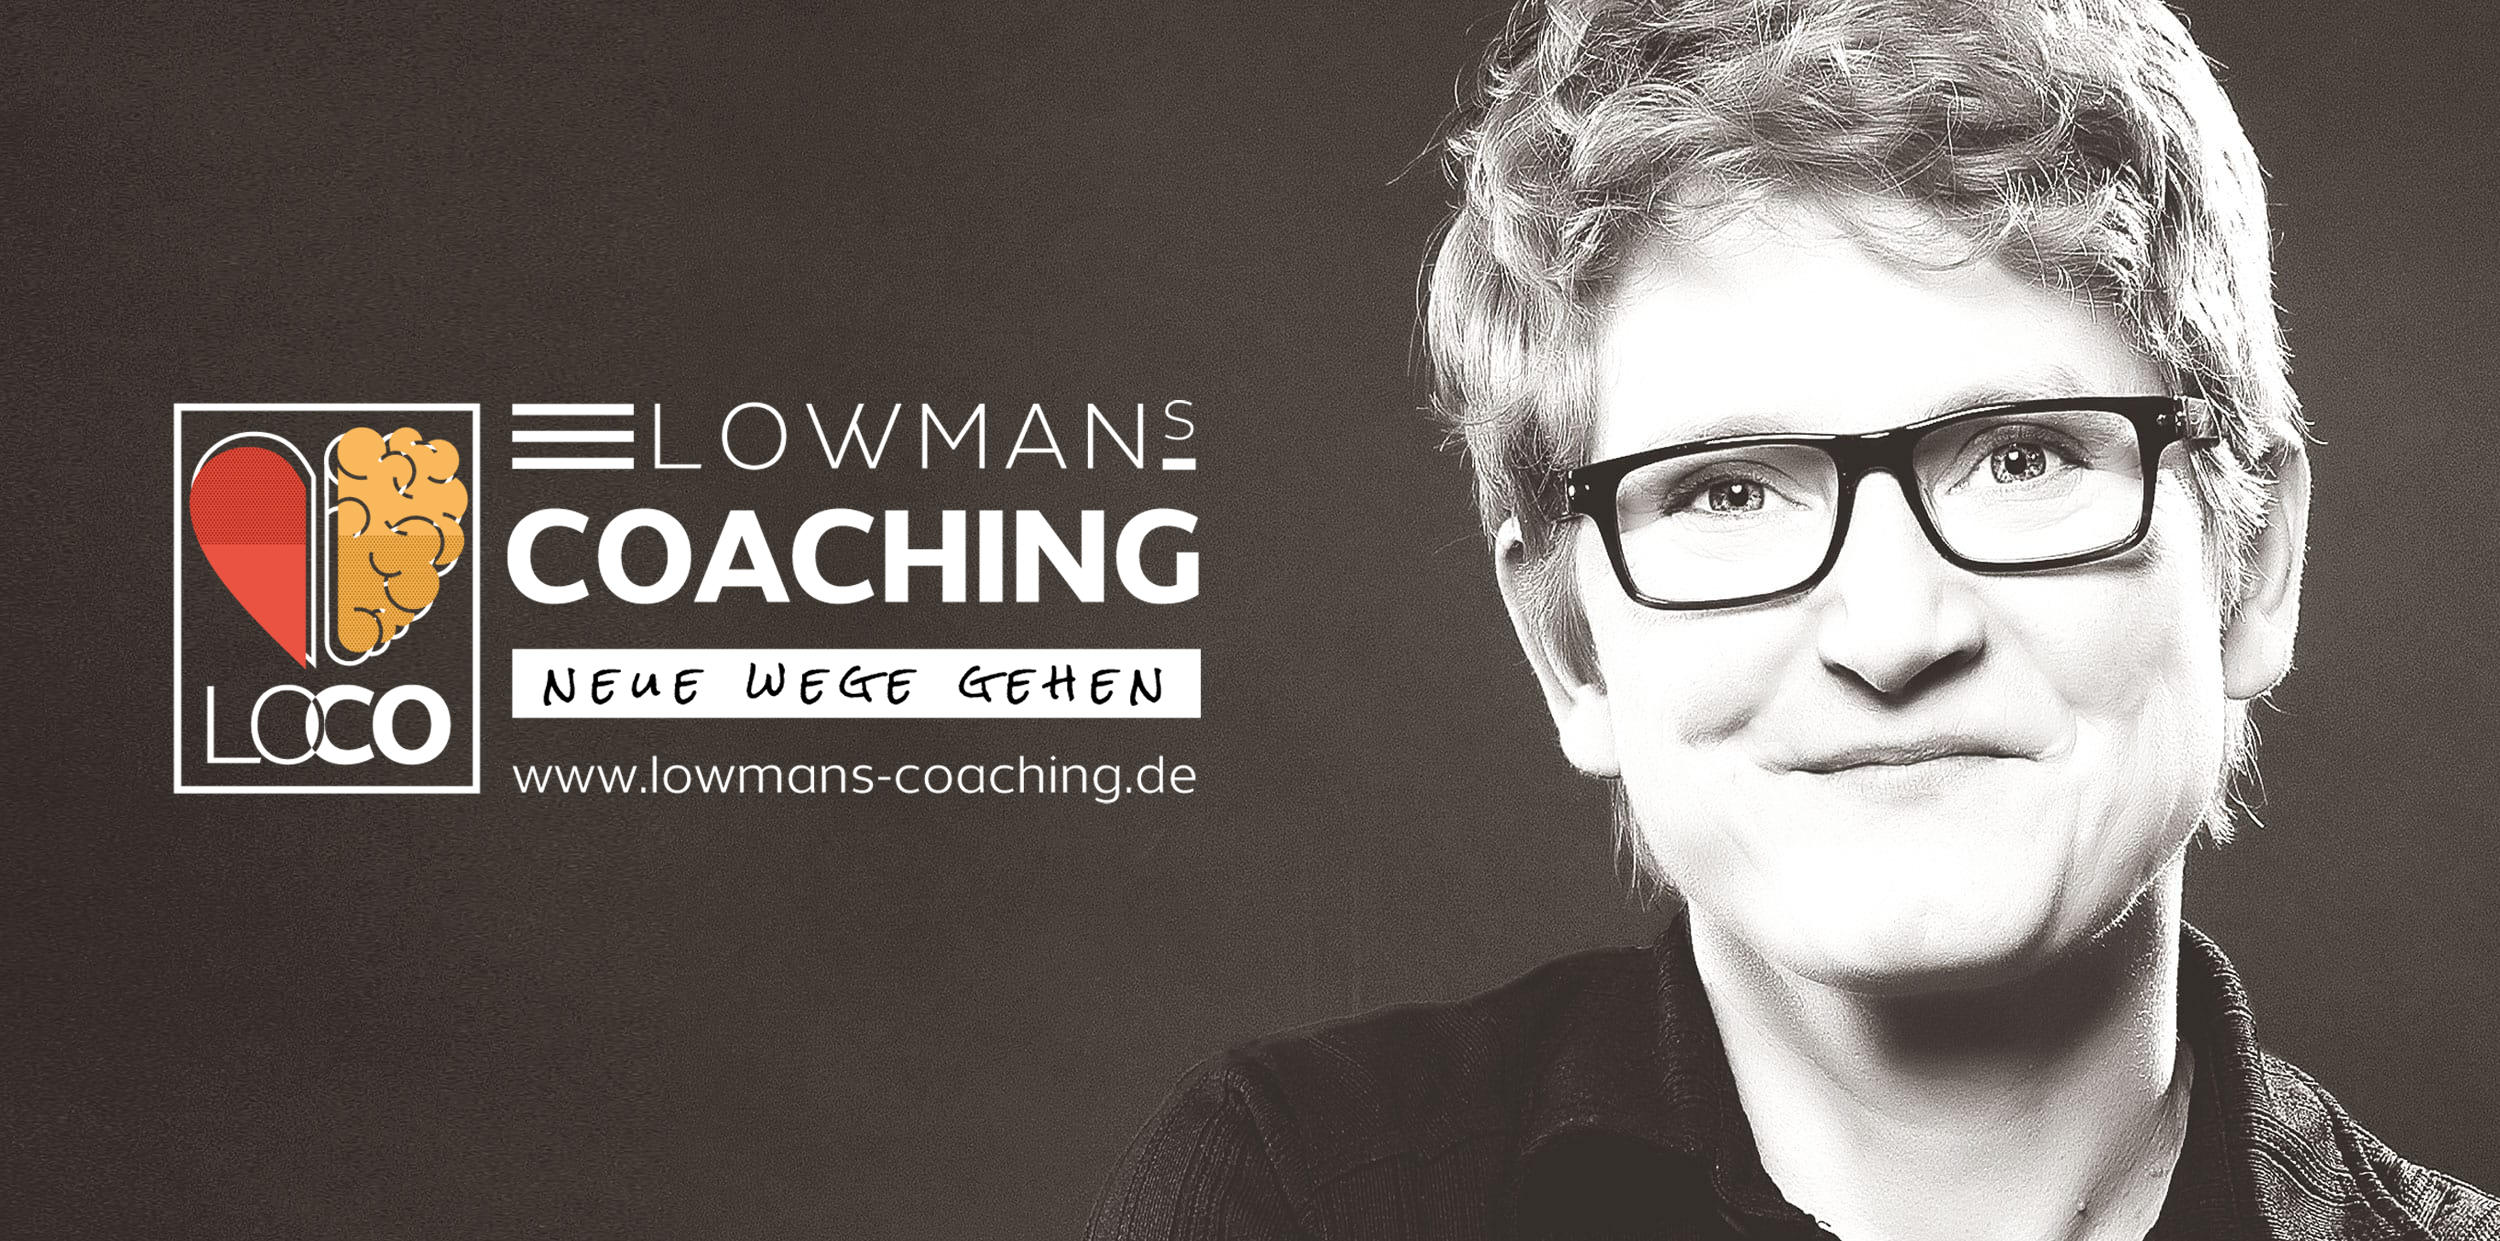 Anja Lohmann, Lowmans Coaching